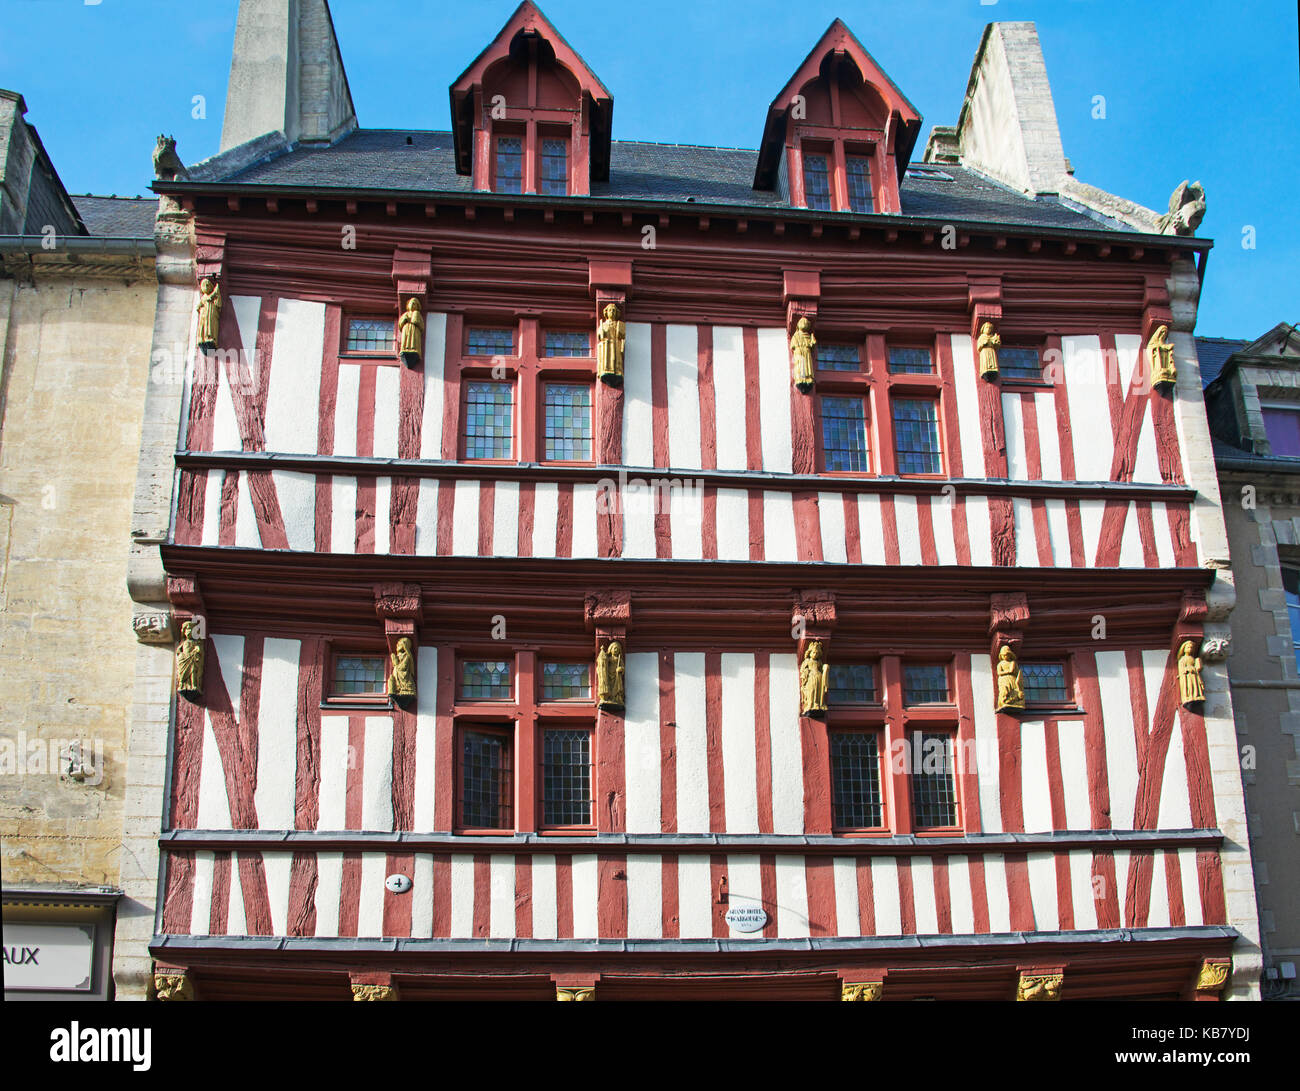 Grand Hotel de Argouges aus dem 15. Jahrhundert mit Satteldach Timber Frame Bayeux Normandie Frankreich Stockfoto